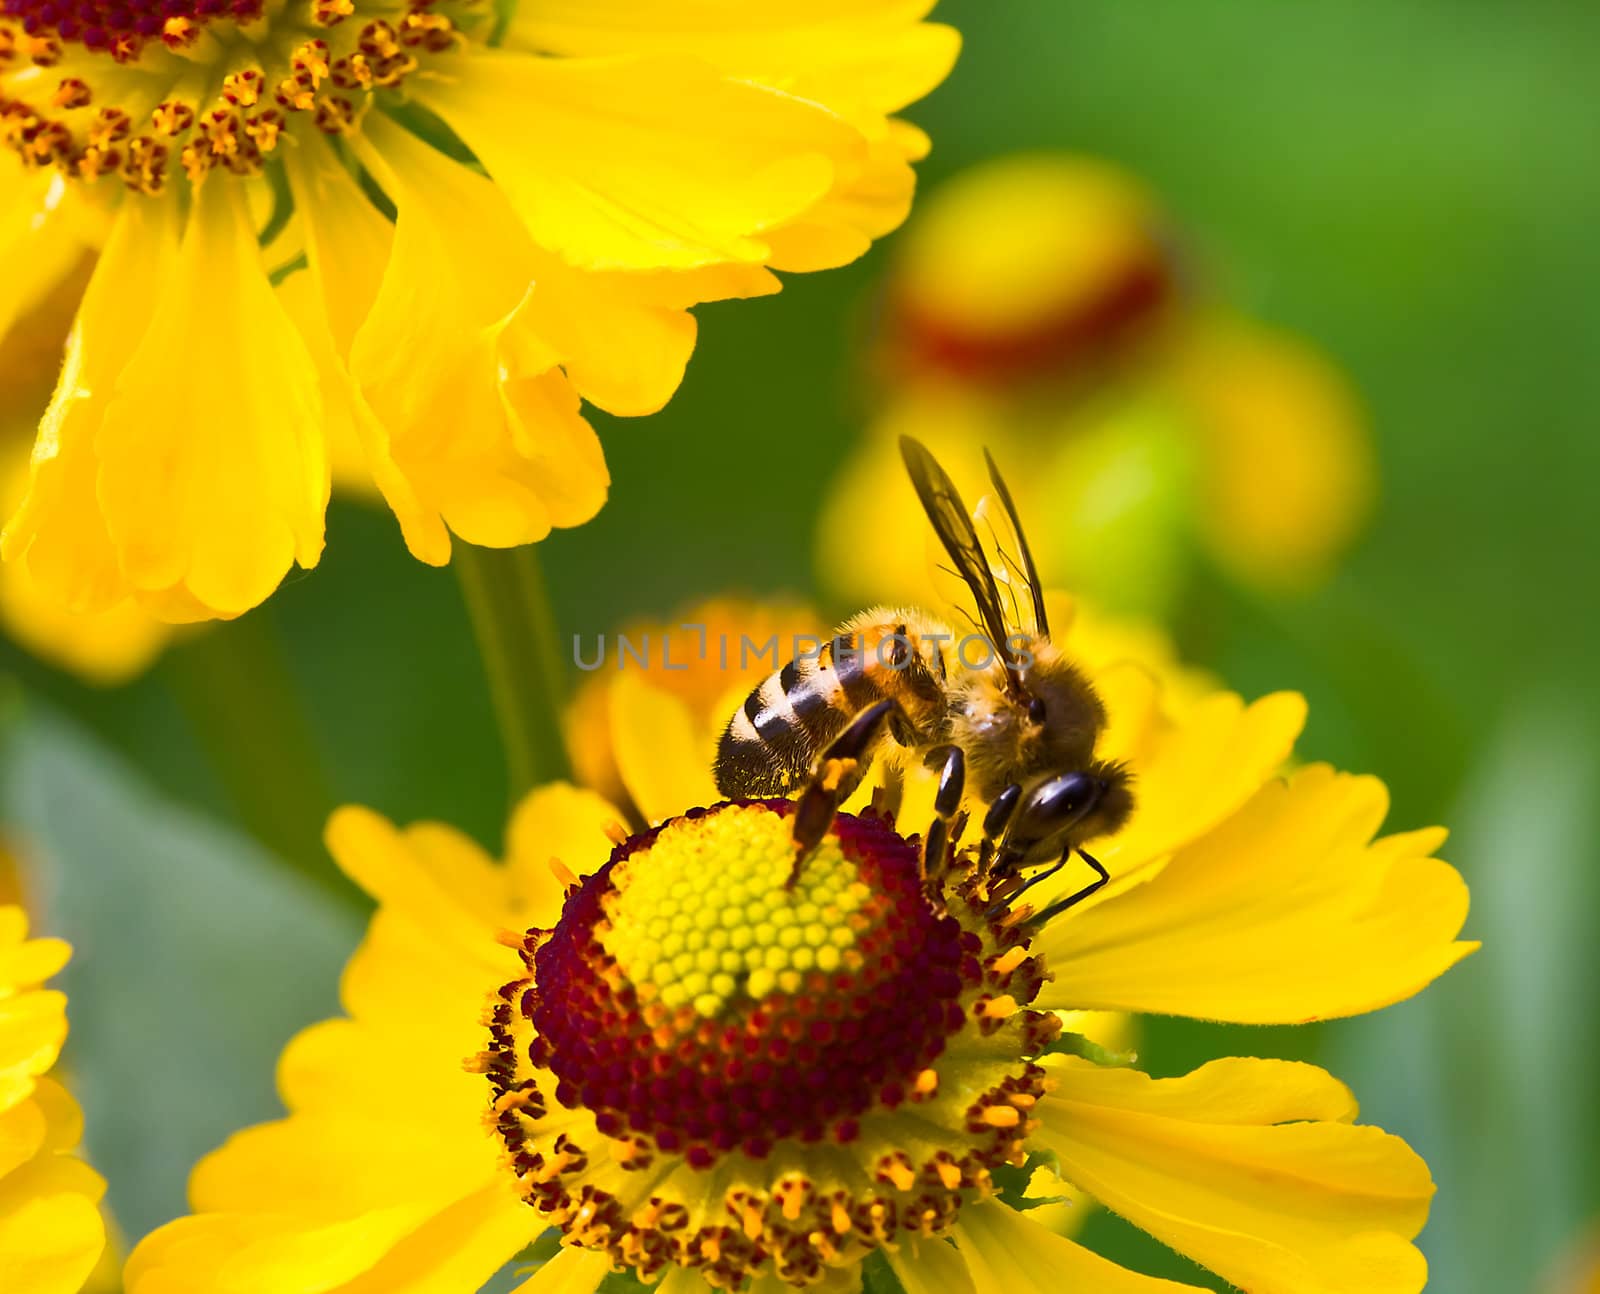 little bee on yellow flower by Alekcey